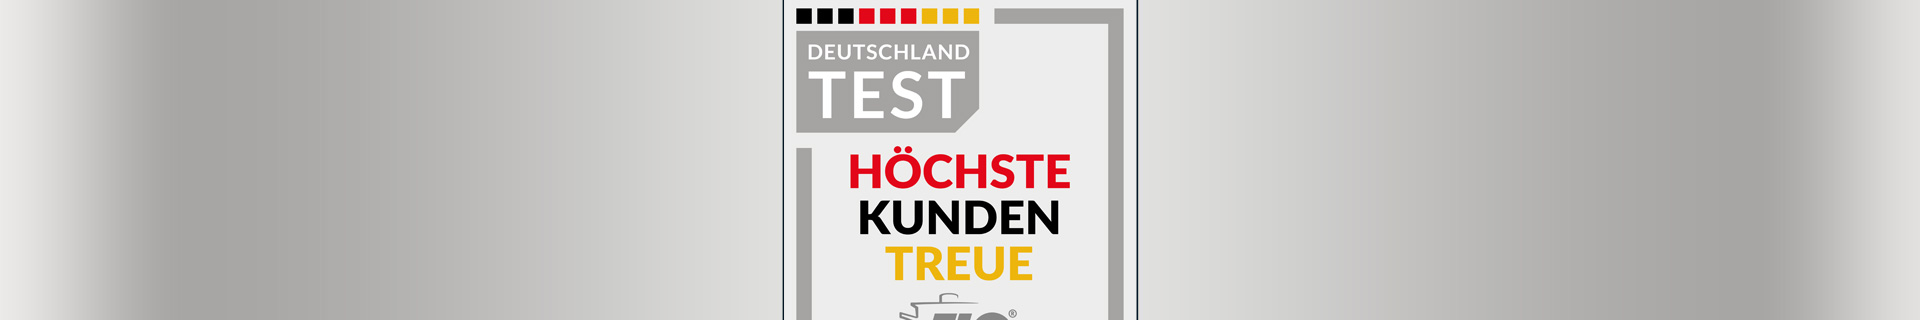 header 1920x320 focus deutschland test